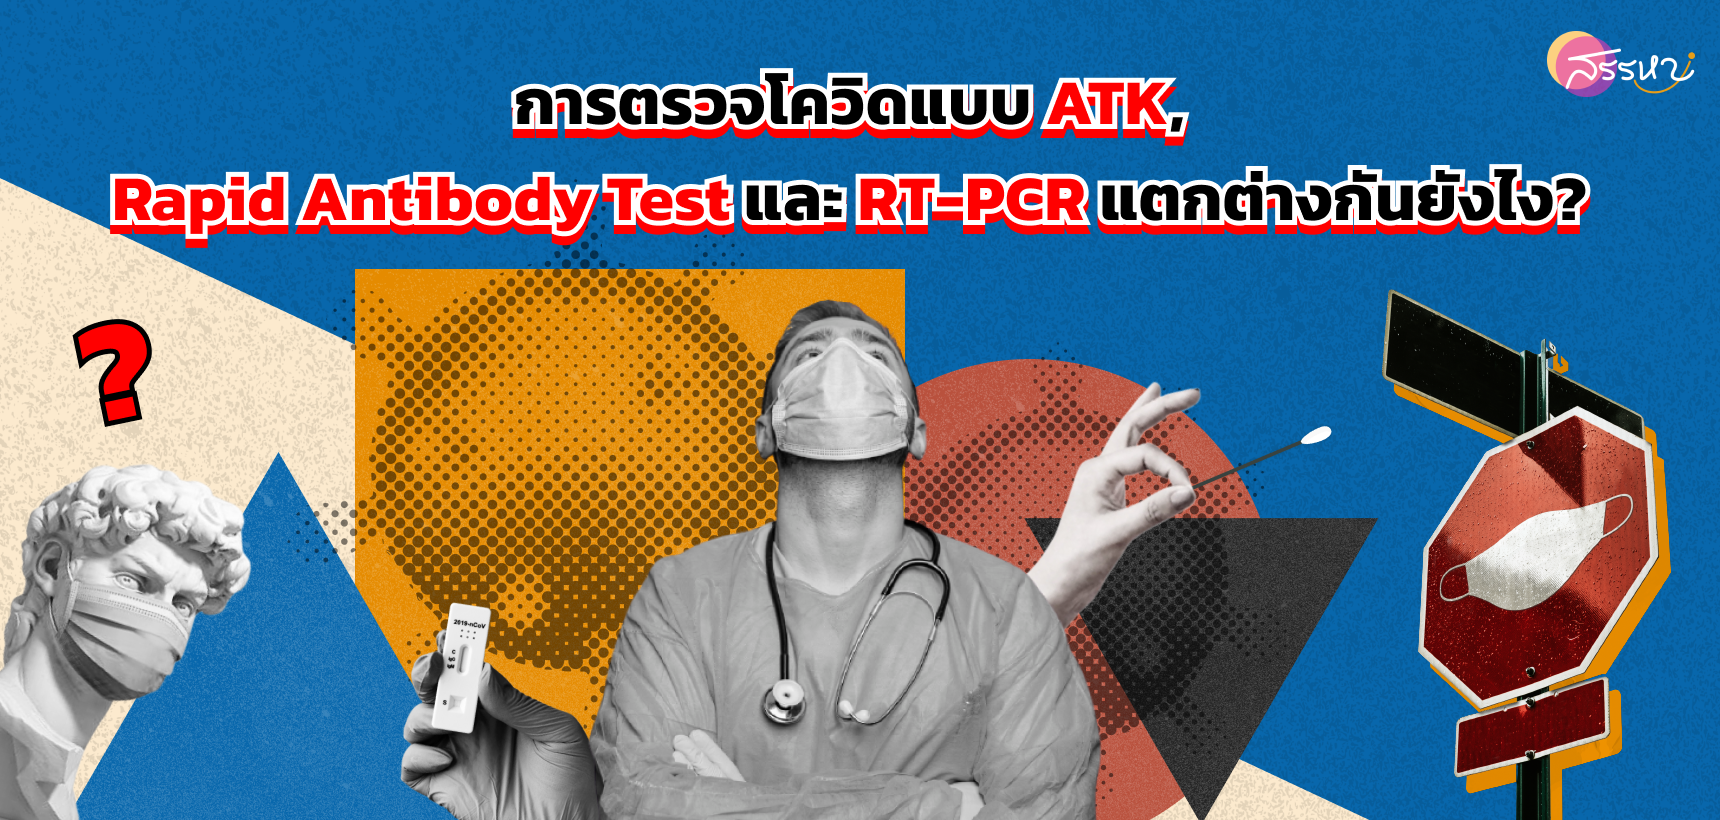 การตรวจโควิดแบบ ATK, Antibody Test และ RT-PCR แตกต่างกันยังไง?